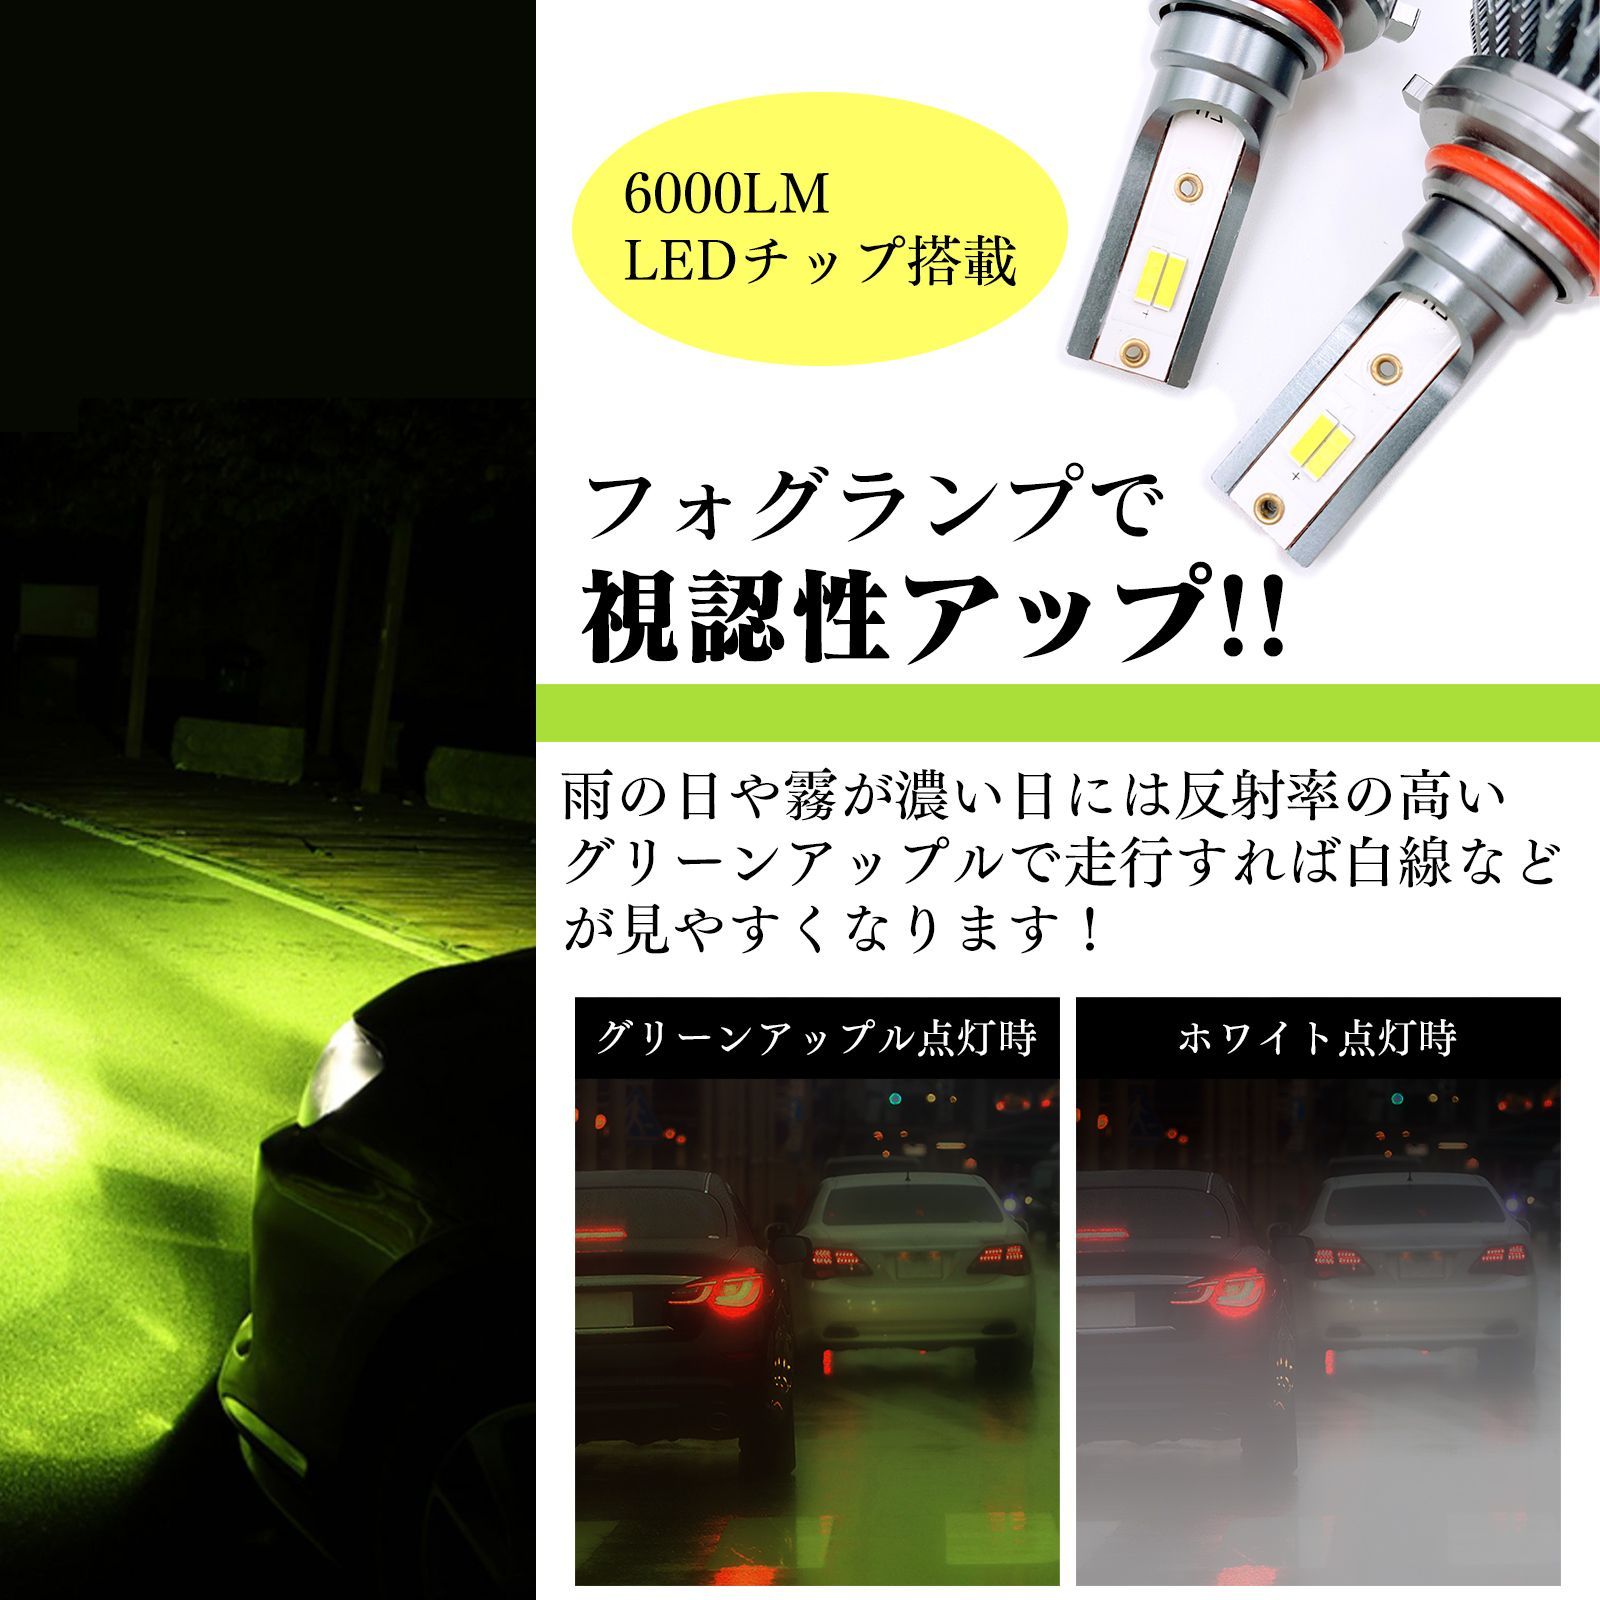 爆光 2色 切替式 LED フォグランプ バルブ HB4 H8 H9 H11 H16 12V 24V グリーン アップル ライム レモン イエロー  ホワイト 白 緑 ヘッドライト - メルカリ